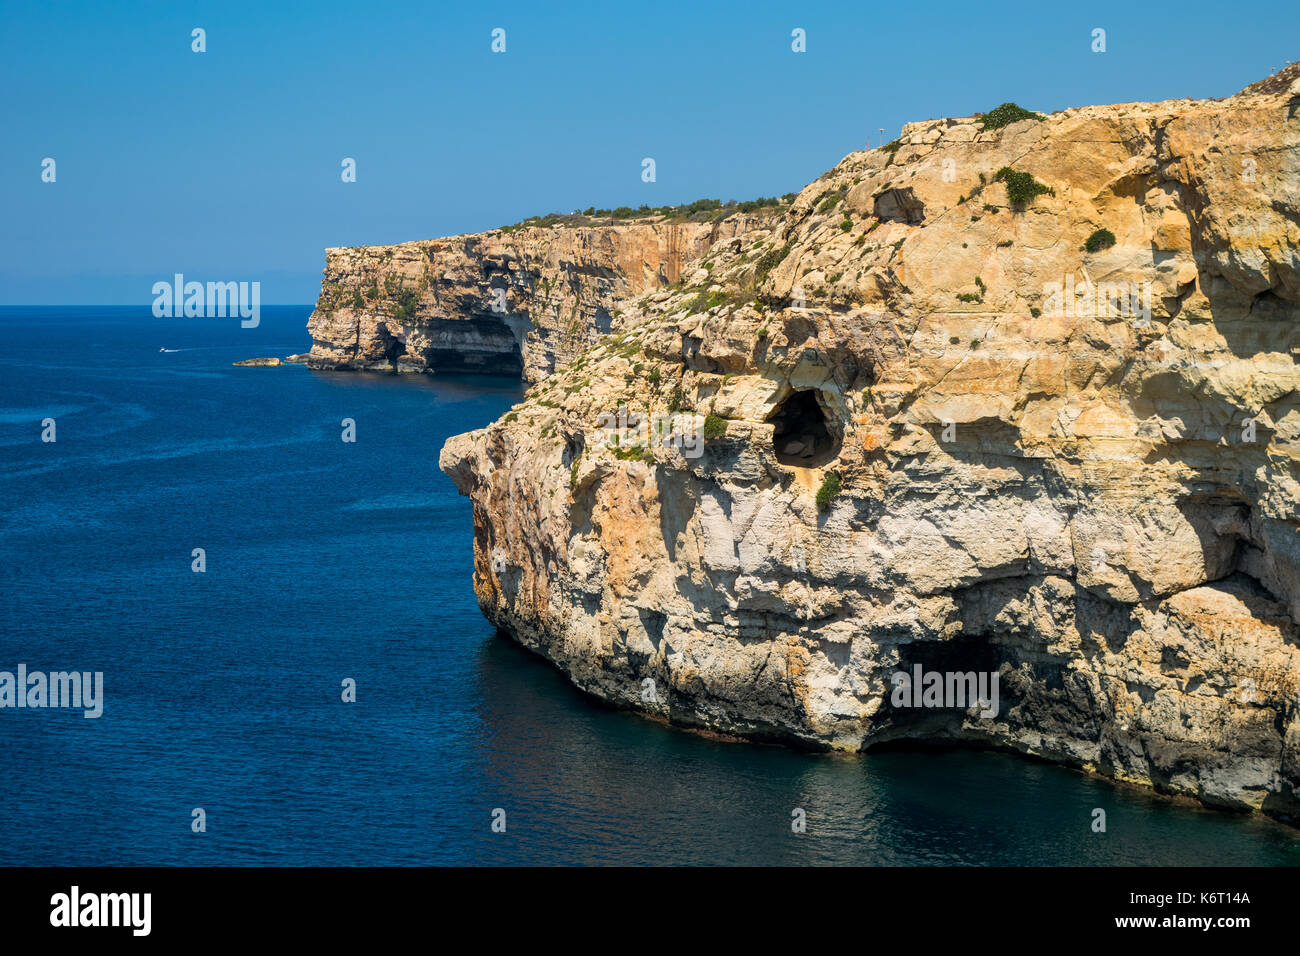 Ein Kalkstein Klippe in der südwestlichen Küste der maltesischen Inseln, zeigen Anzeichen von Erosion und Verwitterung und einem kleinen See Höhle. Malta Stockfoto